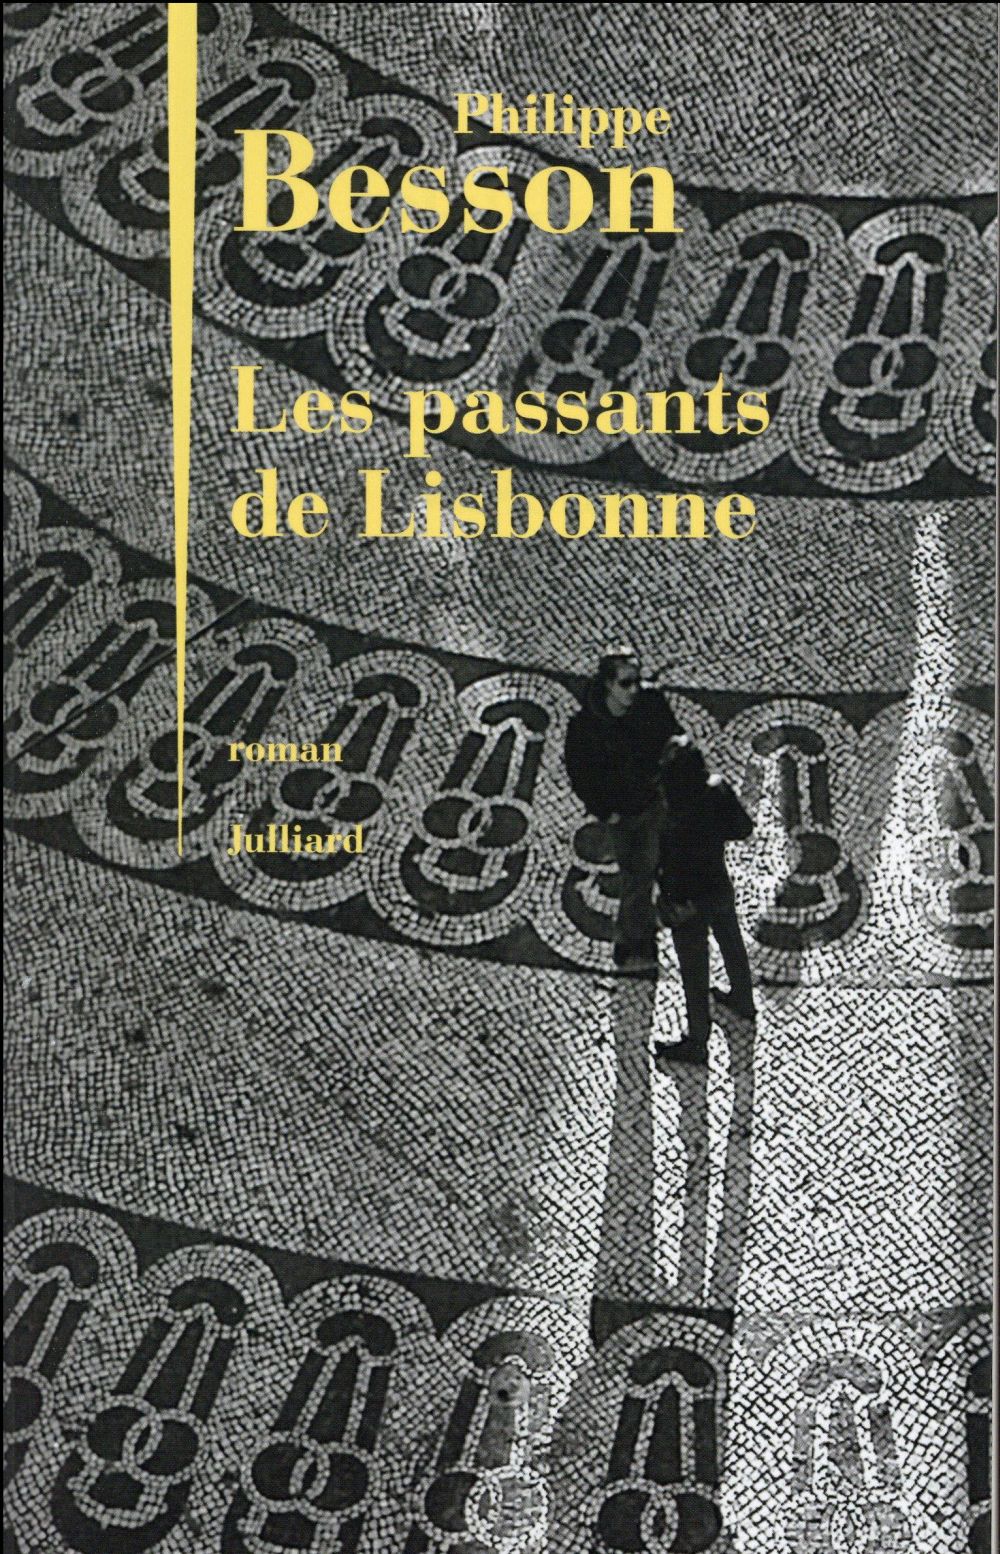 LES PASSANTS DE LISBONNE